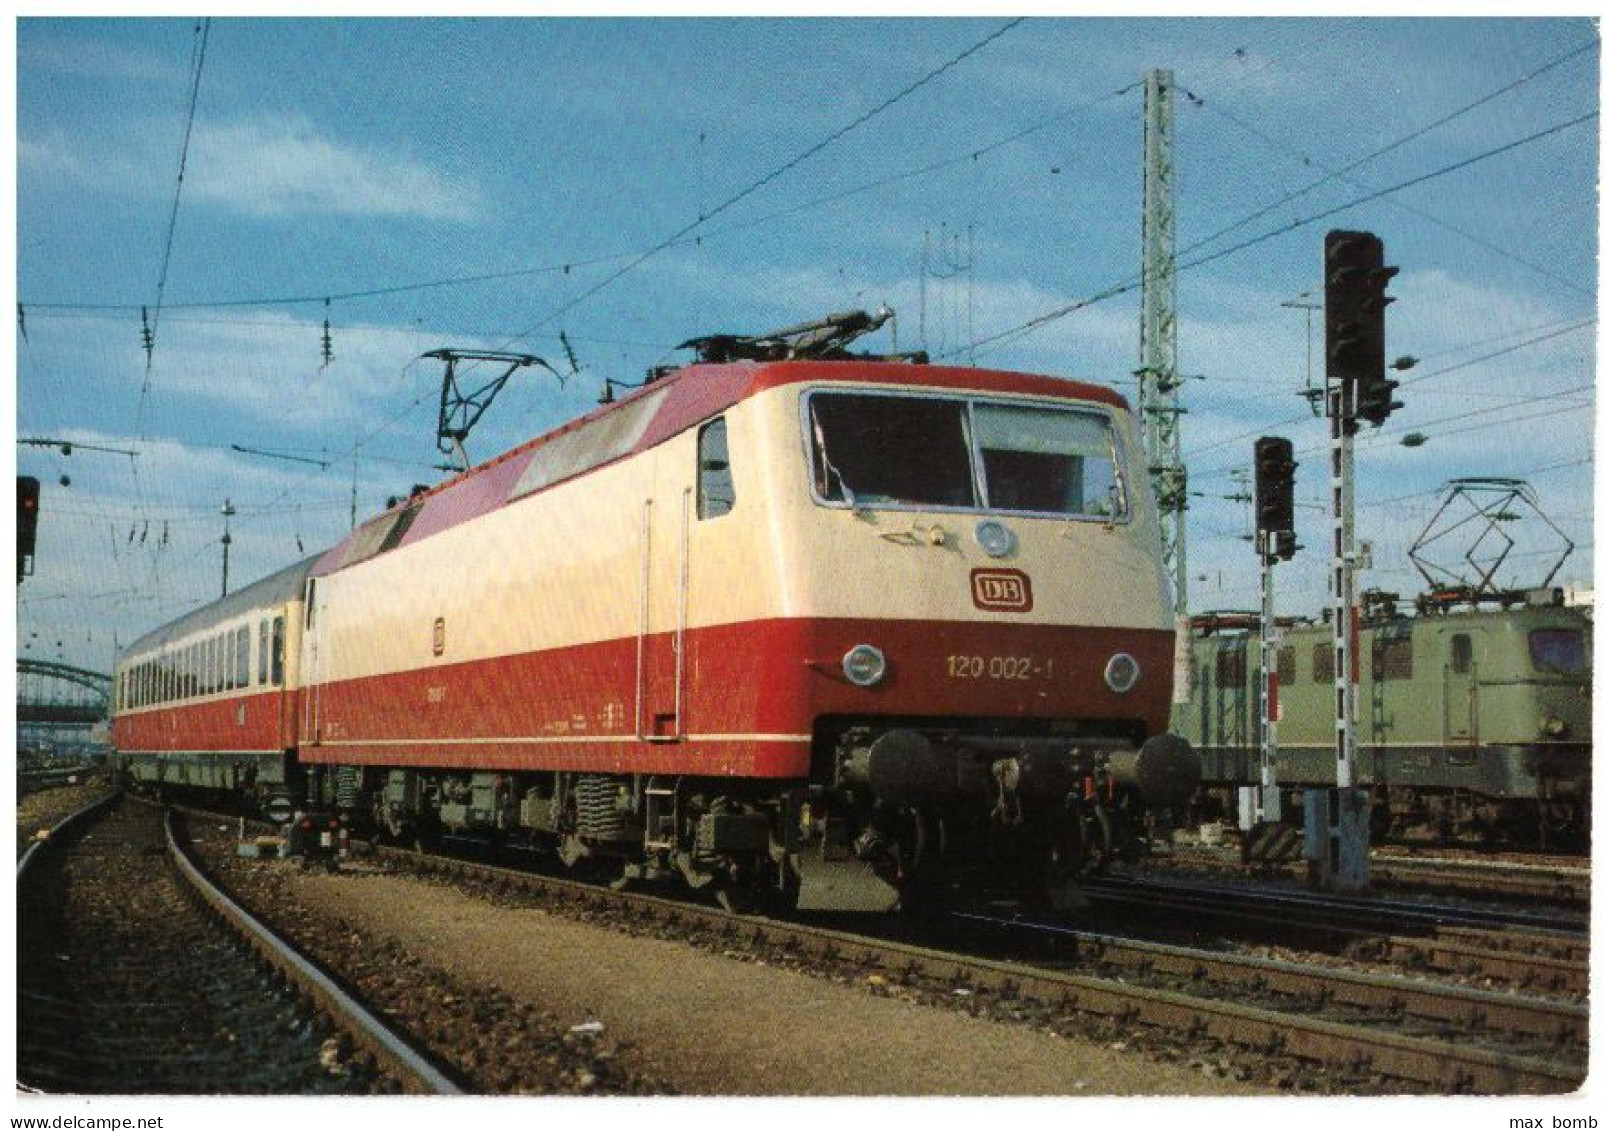 1981 TRENO GERMANIA DB ELEKTRISCHE UNIVERSALLOKOMOTIVE 120 002.1 LOCOMOTORE 106 - Treinen